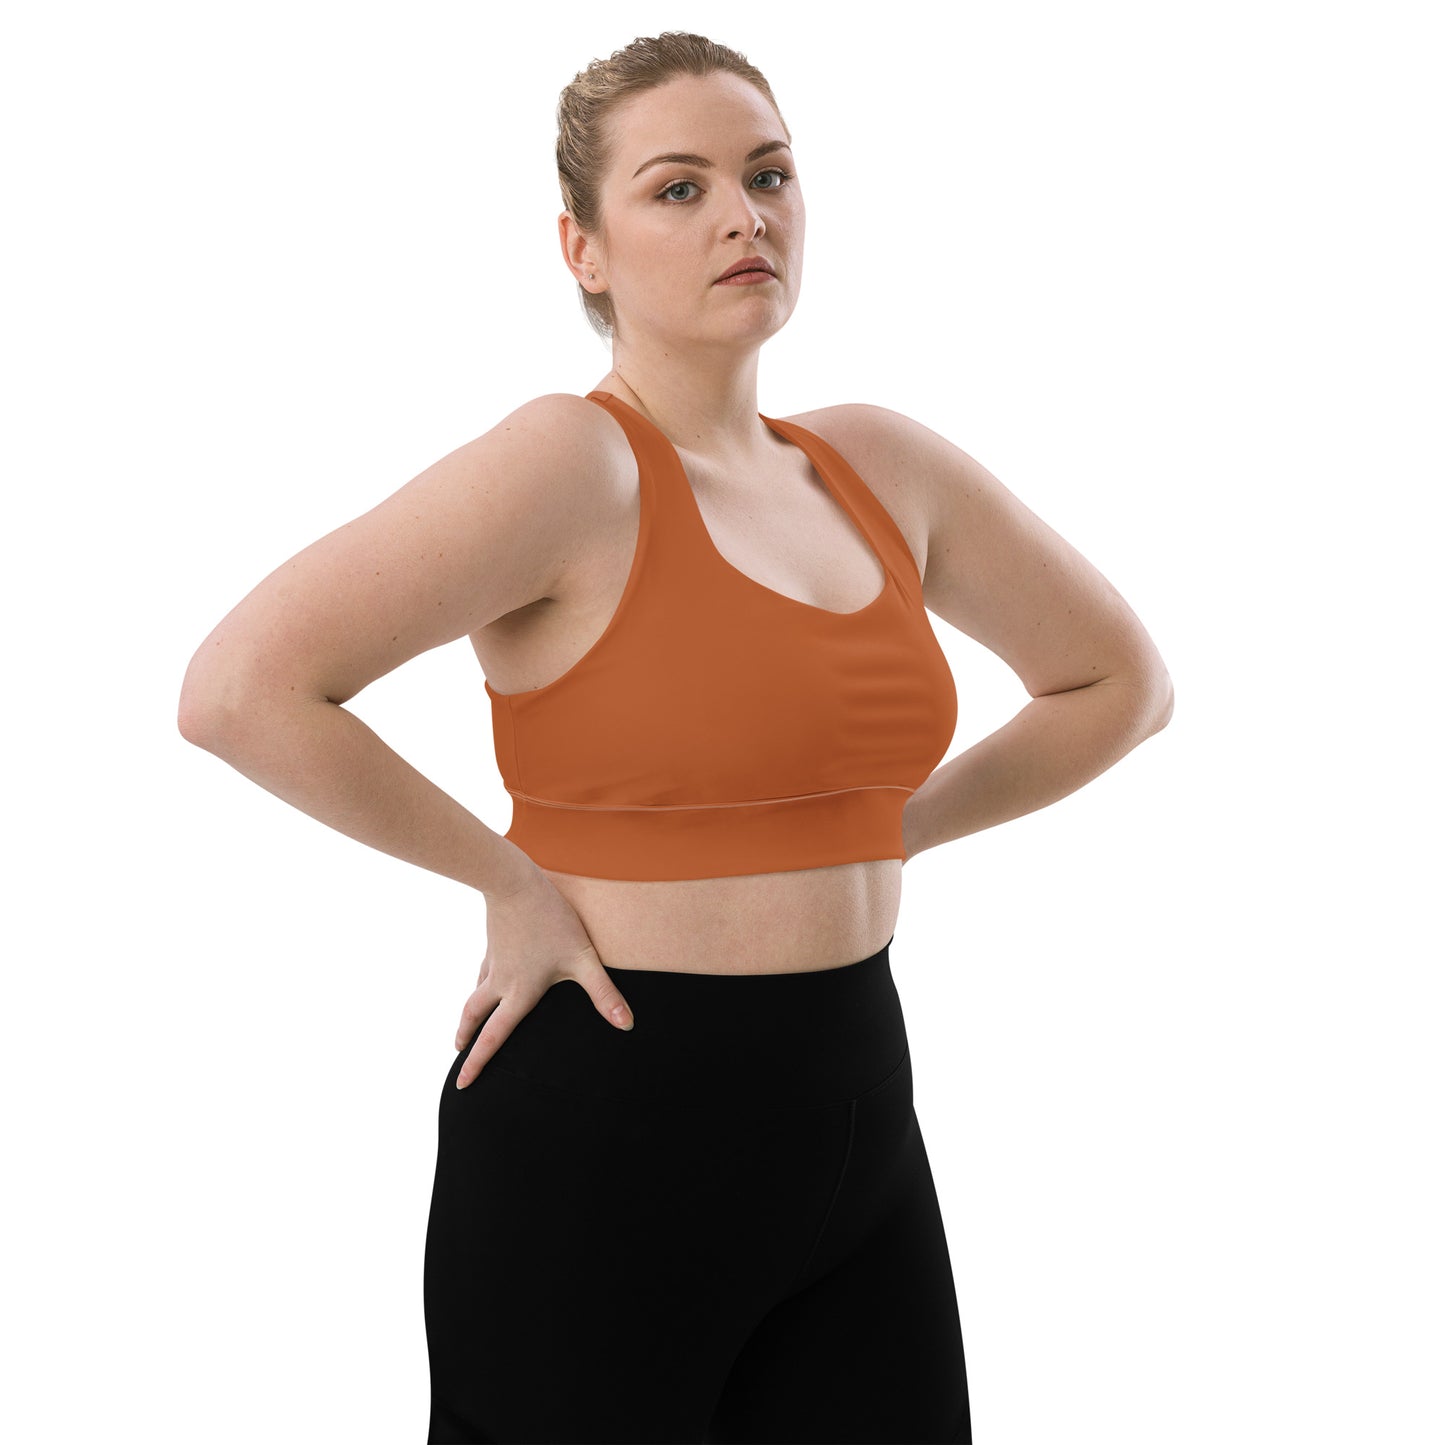  Tenne Longline sports bra by Long-line Women's High Impact Sports Bra sold by Jain Yoga